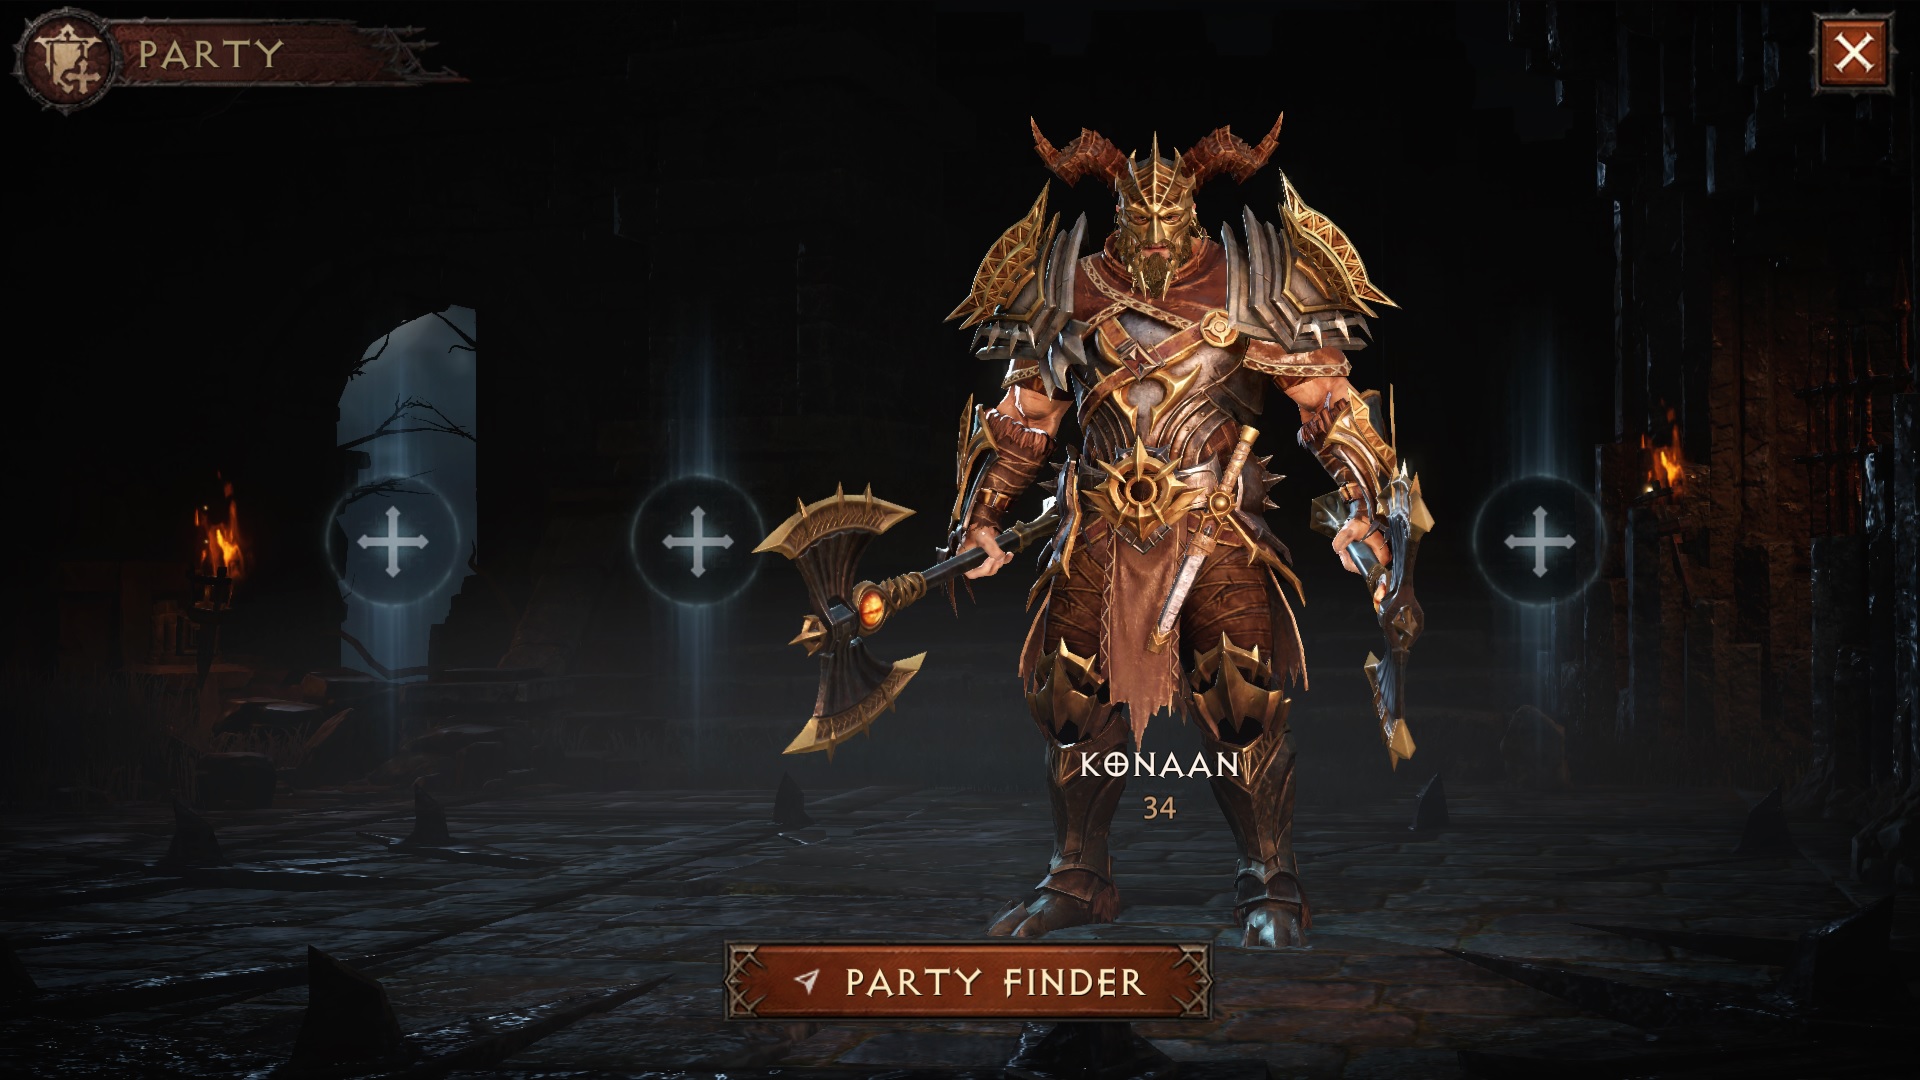 Diablo Immortal: Party Finder Guide